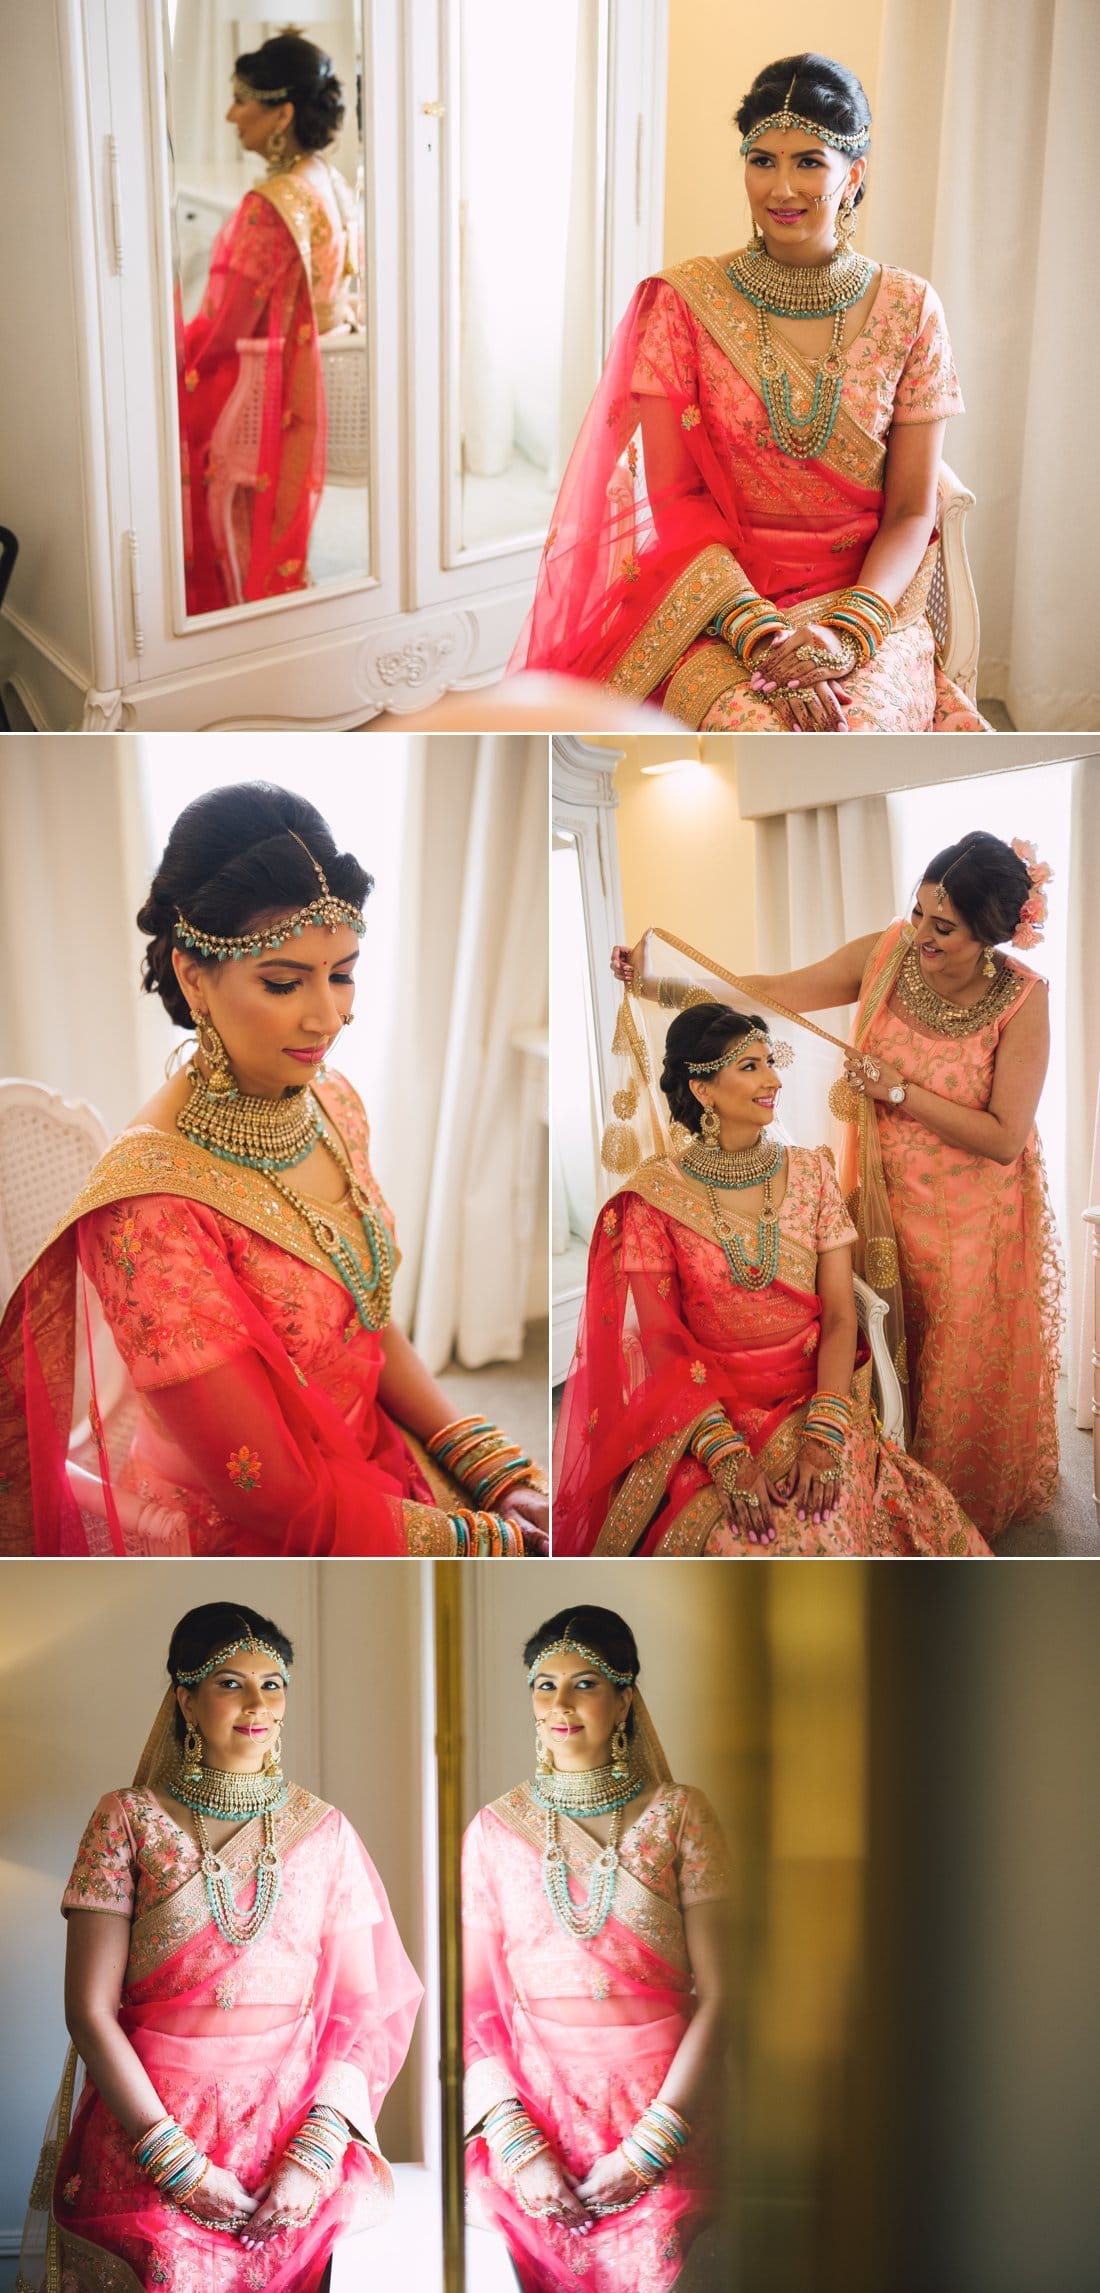 Winstanley House Hindu Wedding Photography 3 3